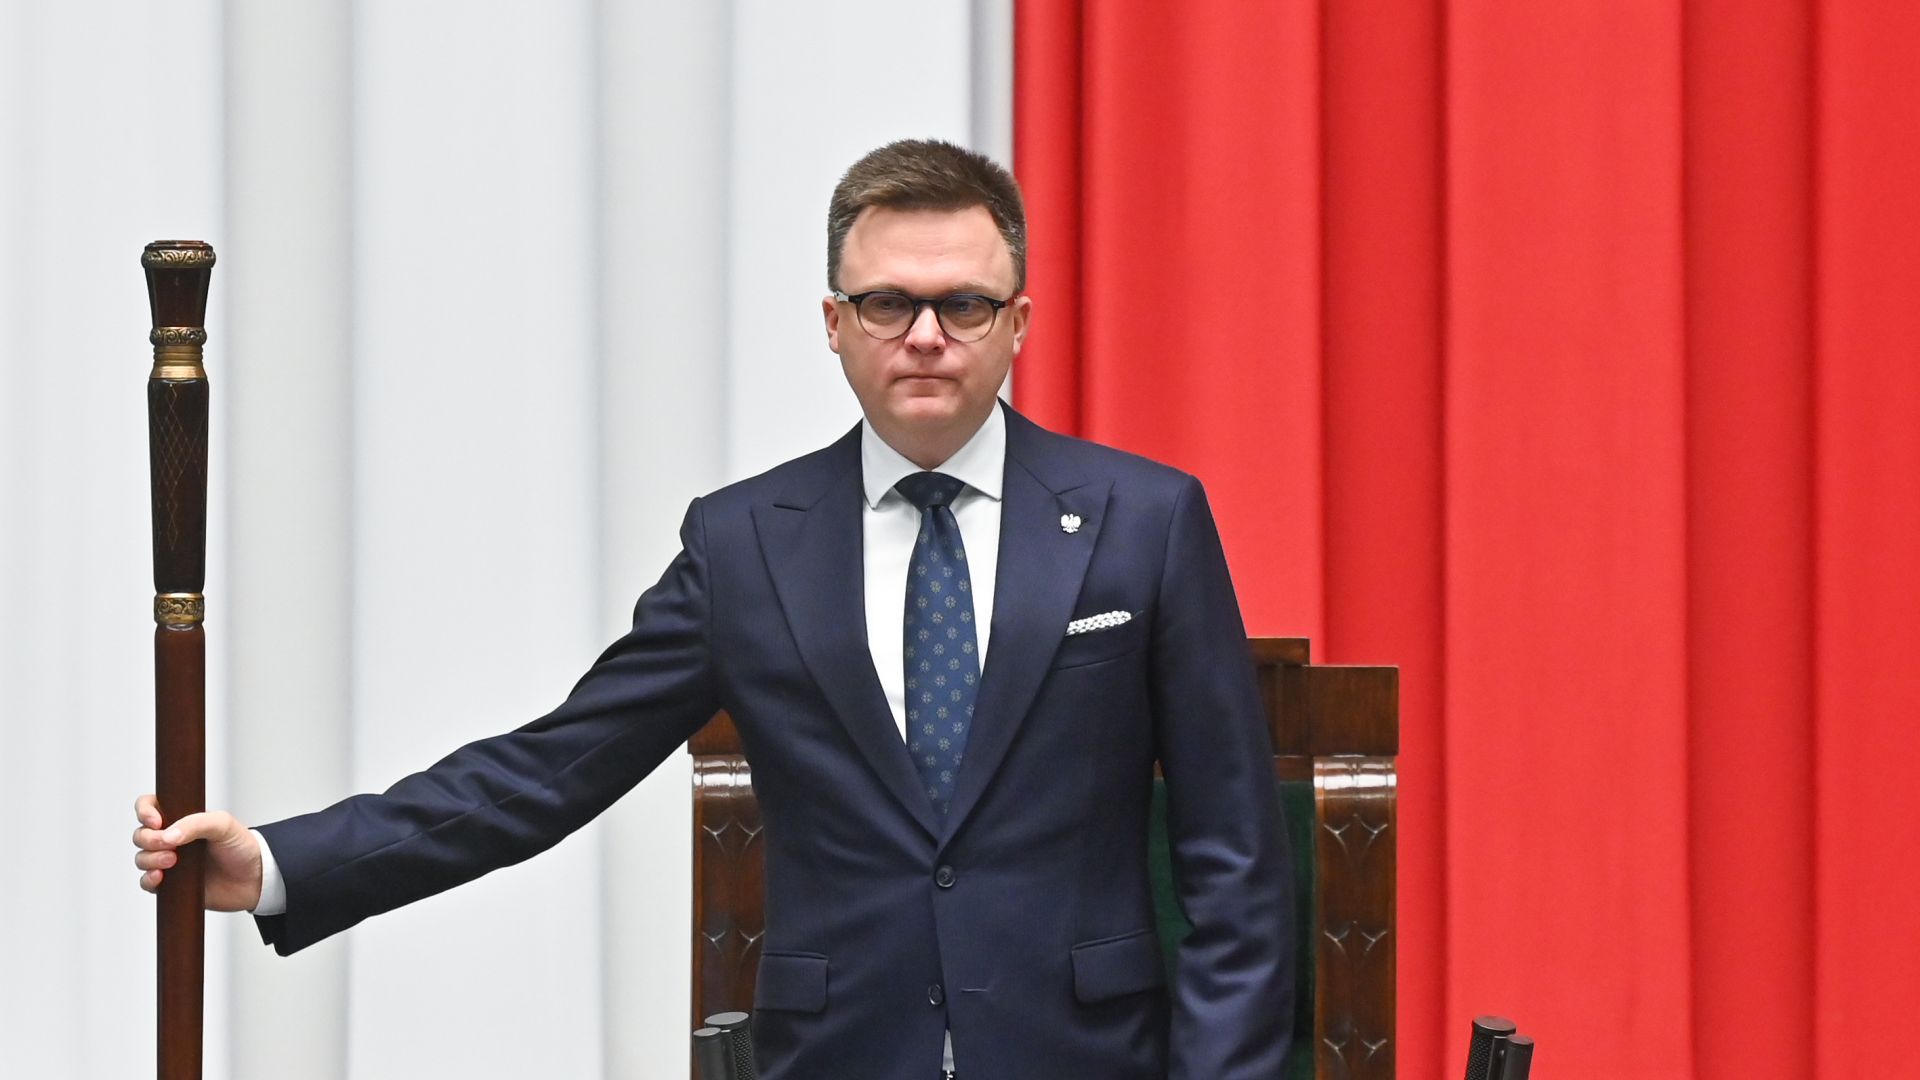 Marszałek Sejmu Szymon Hołownia powiedział, że prezydent Rzeczpospolitej nie ma prywatnych spotkań.